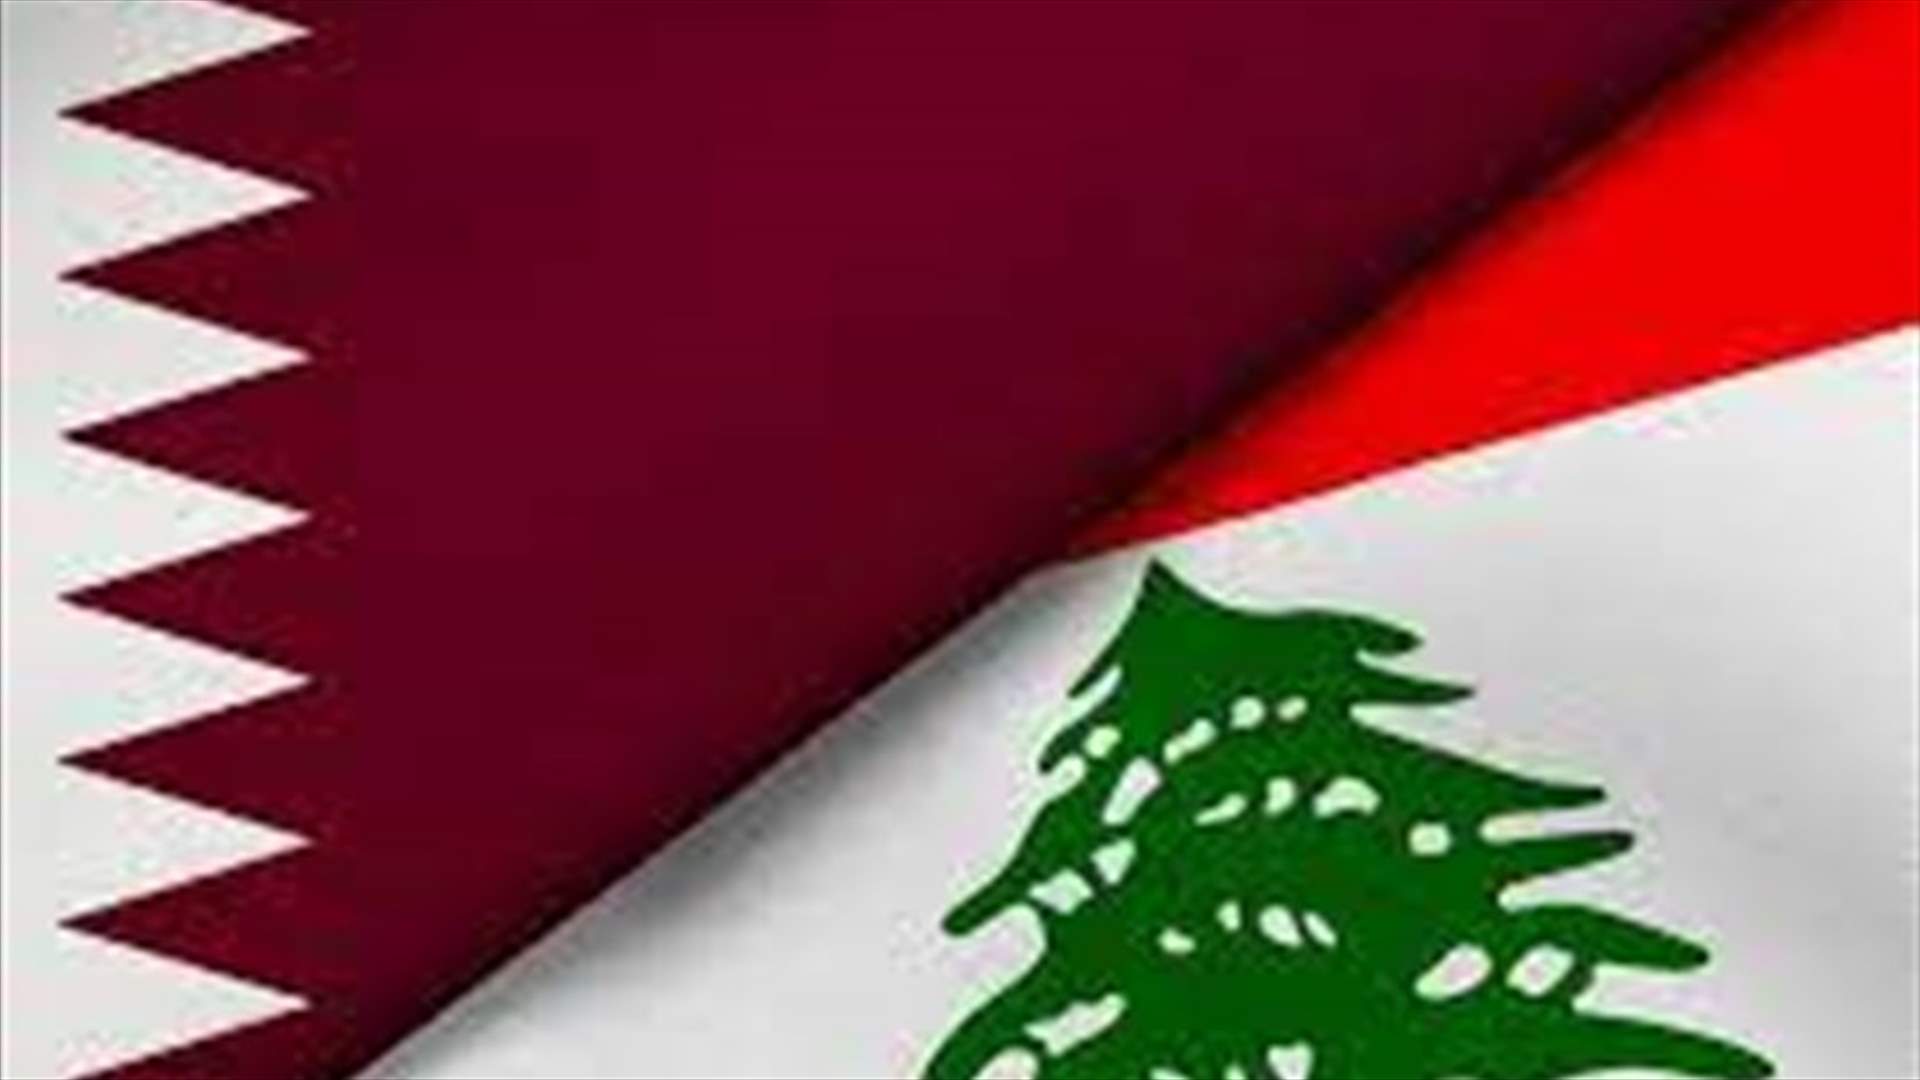 Details of Qatari initiative in Lebanon and Hezbollah stance